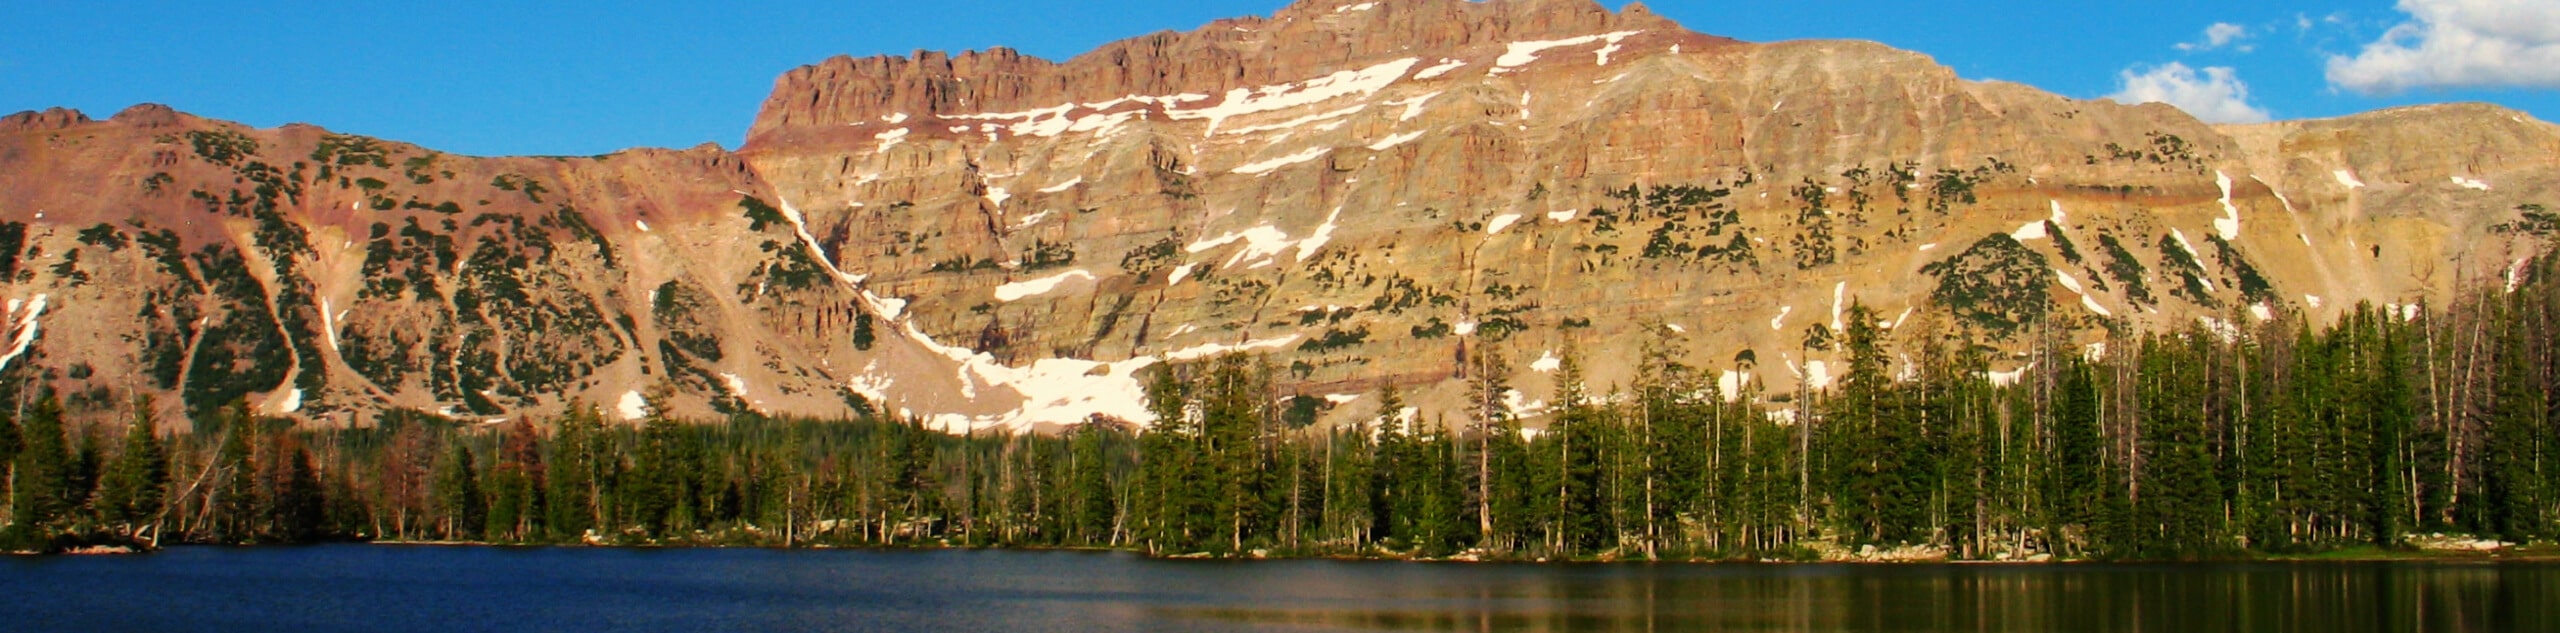 Jewel Lake via the Ruth Lake Trail